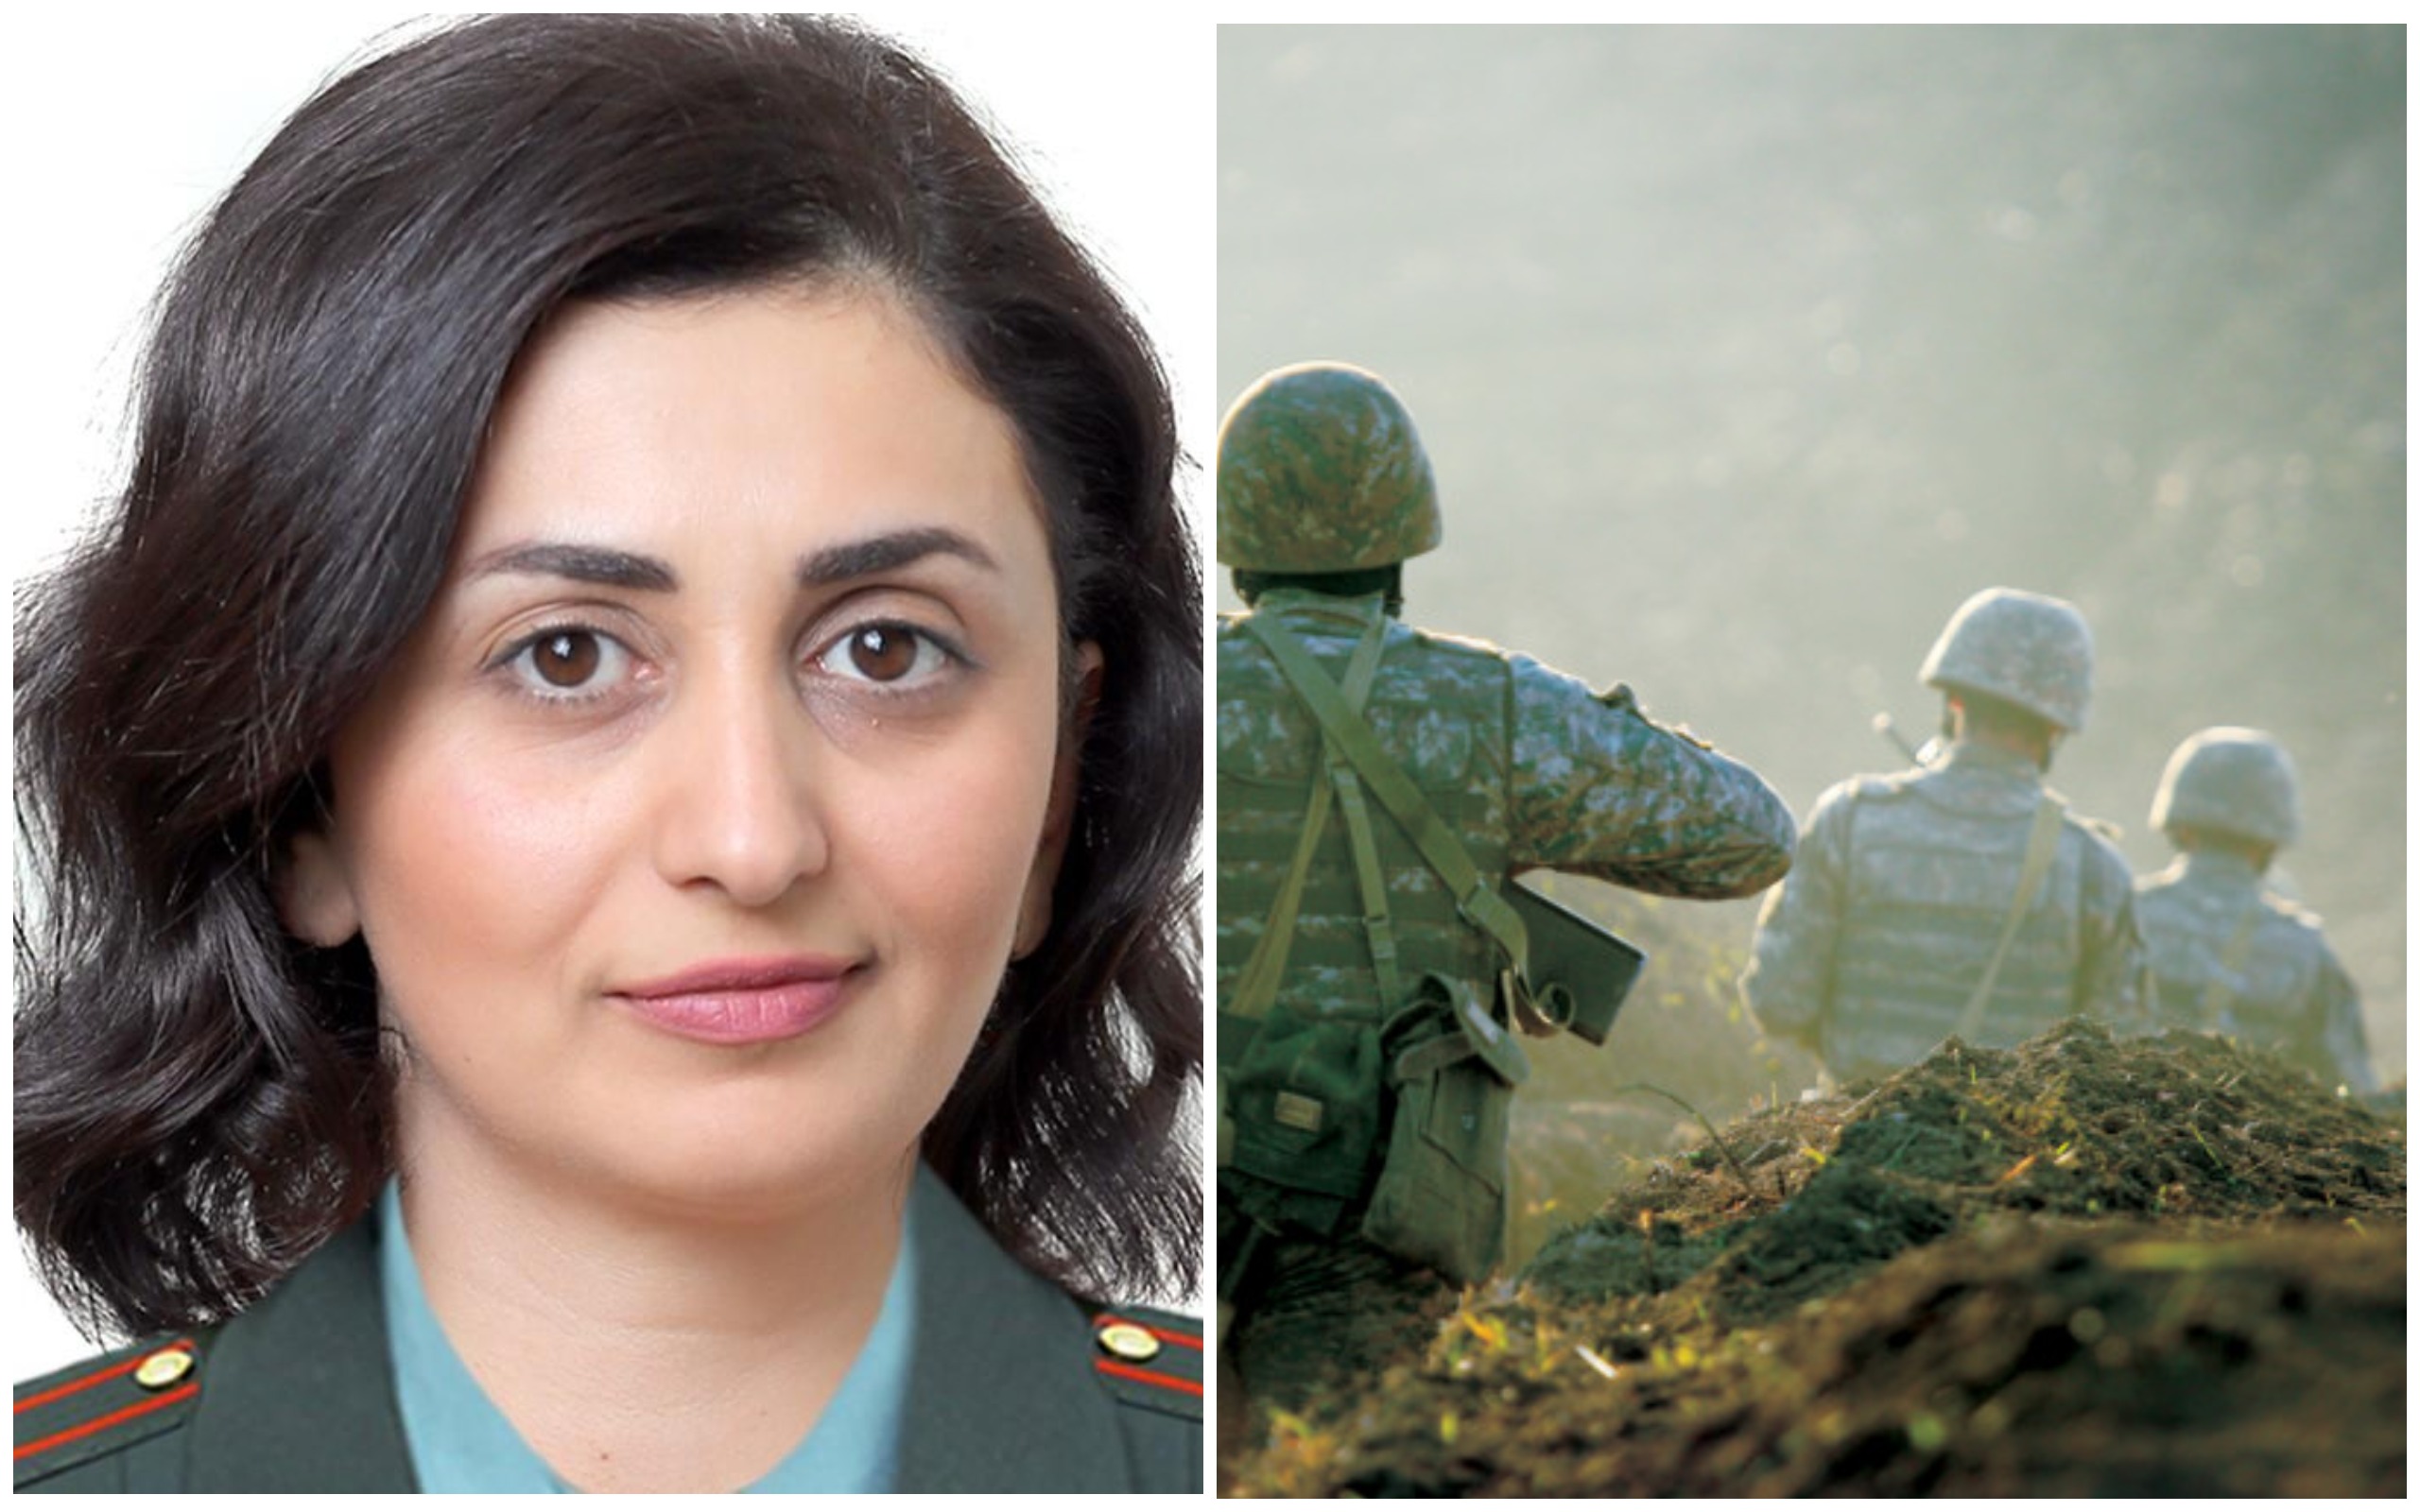 Արցախի ՊԲ-ն արդեն իսկ հասցնում է հզոր հարվածներ Ադրբեջանի խորը թիկունքում տեղակայված կարևորագույն ռազմական օբյեկտներին. Շուշան Ստեփանյան